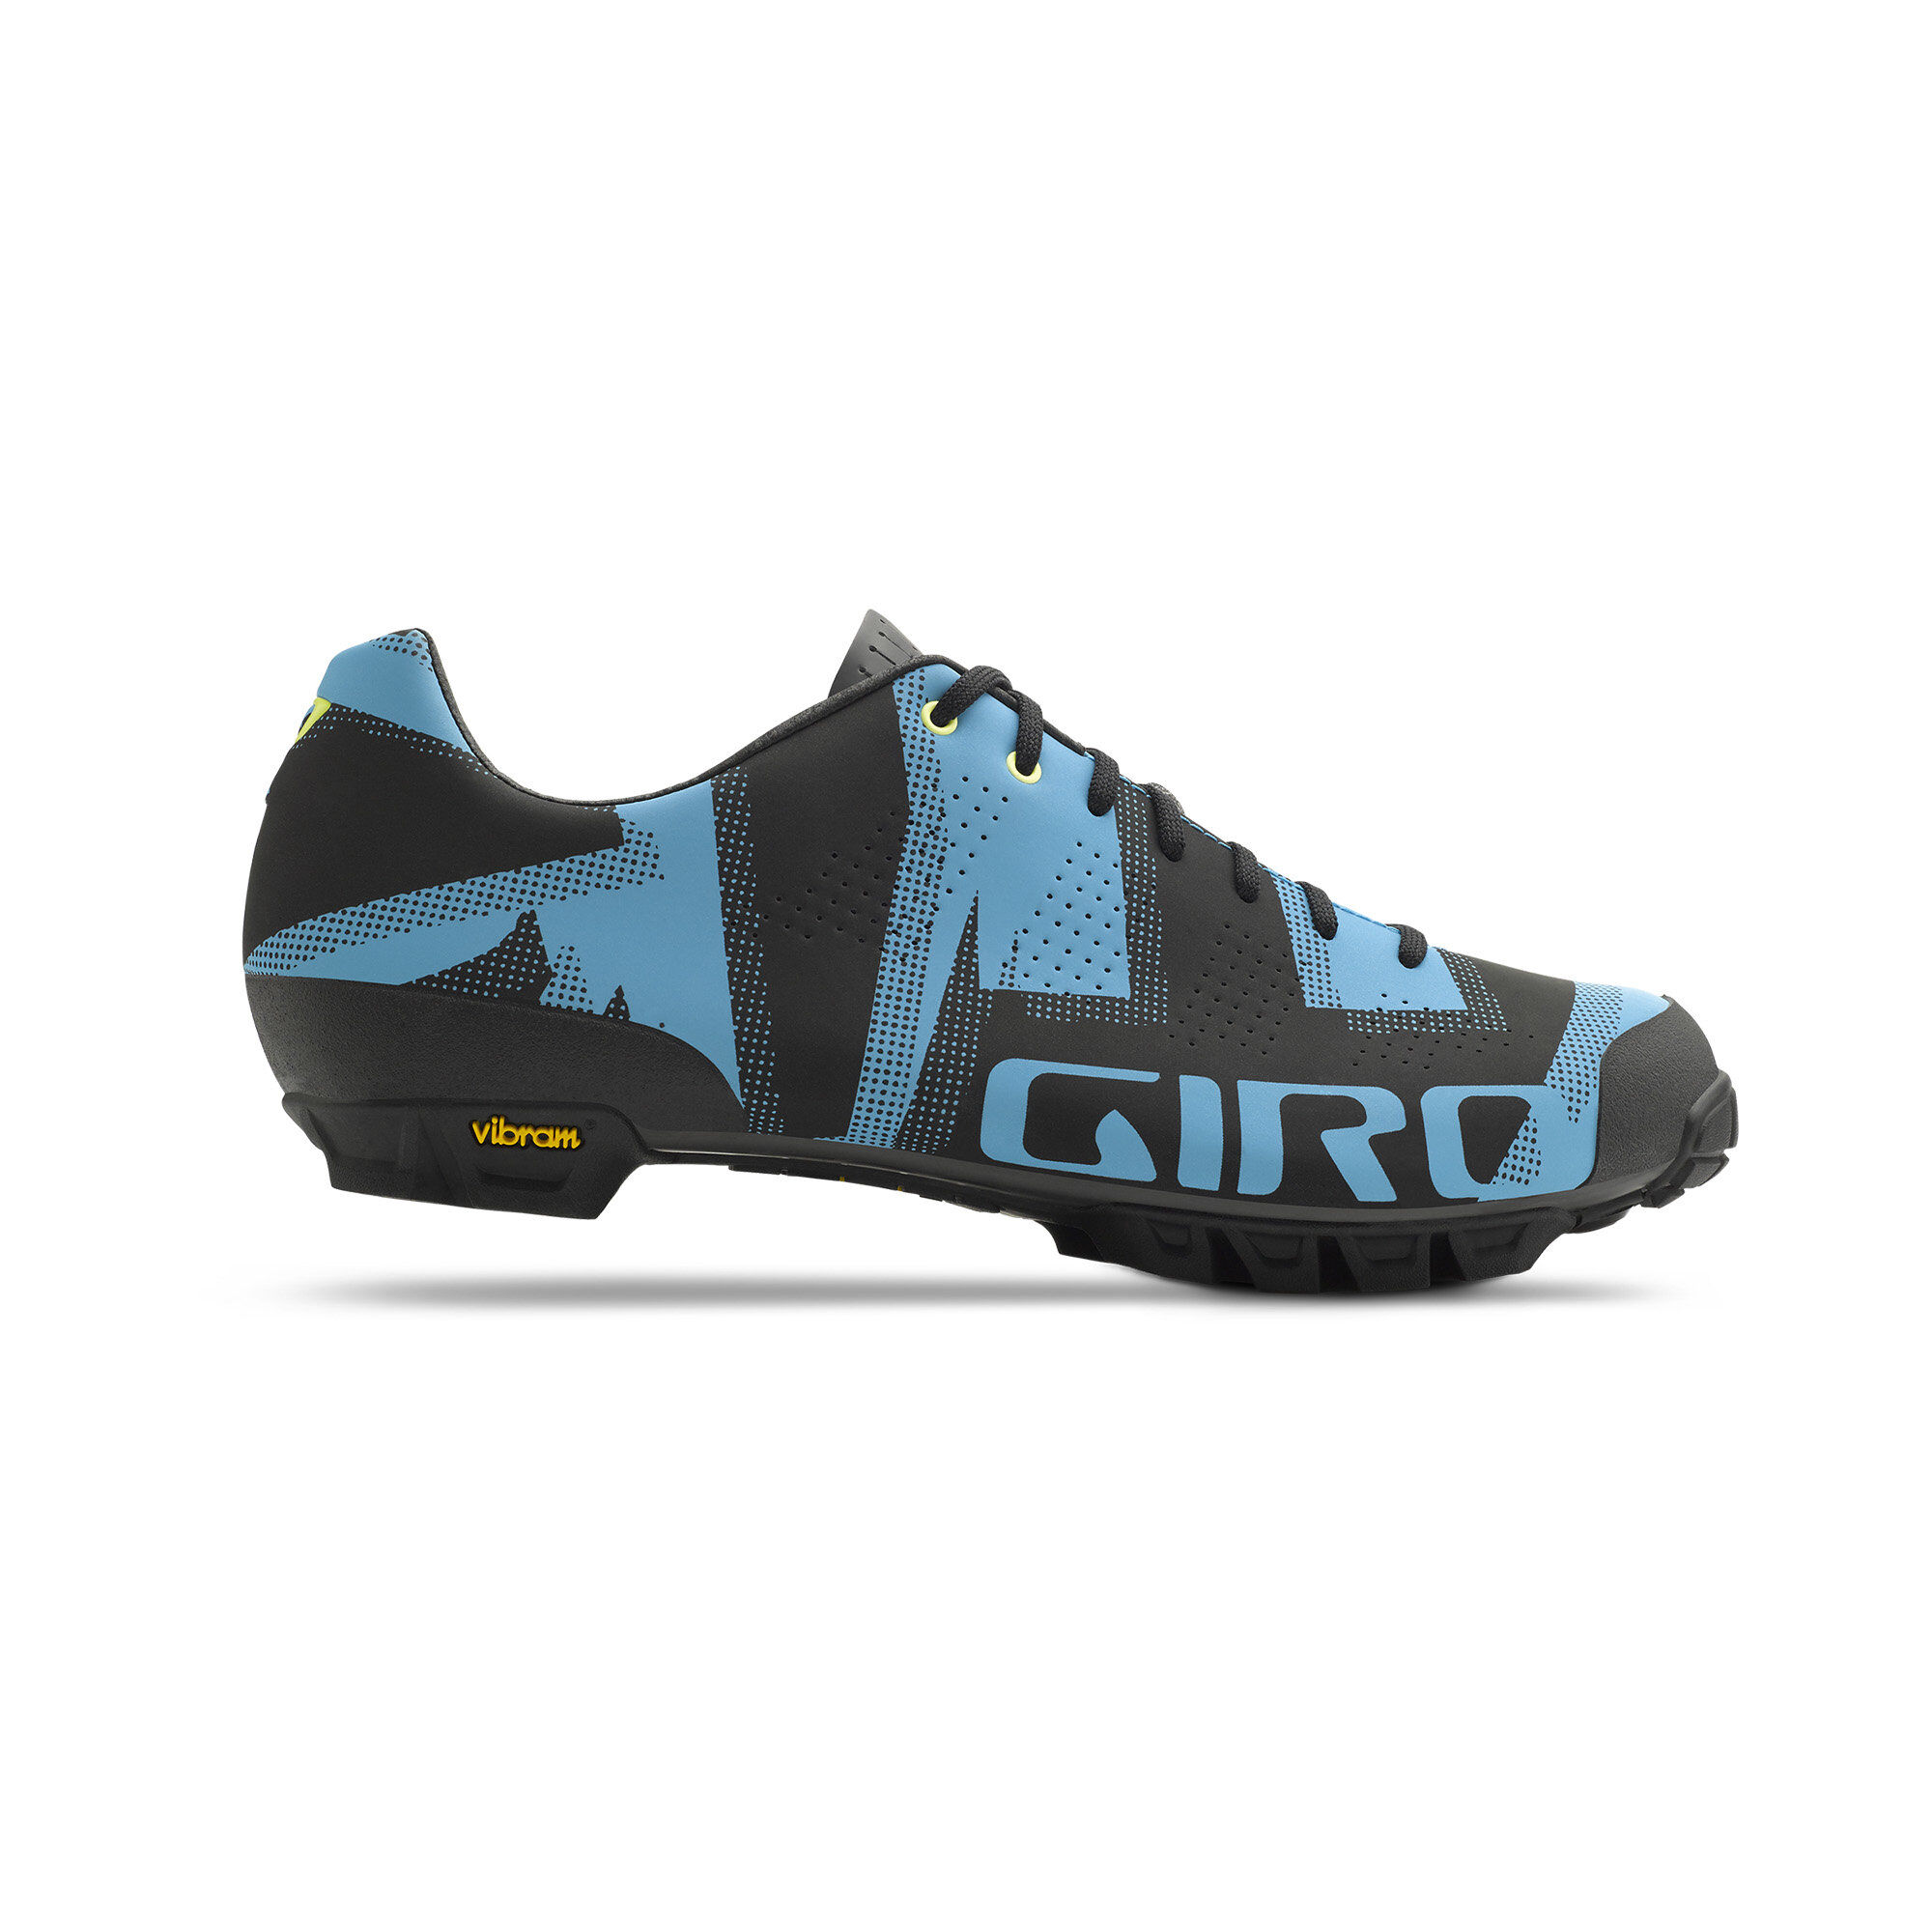 Giro Empire VR90 - Cycling shoes - Men's